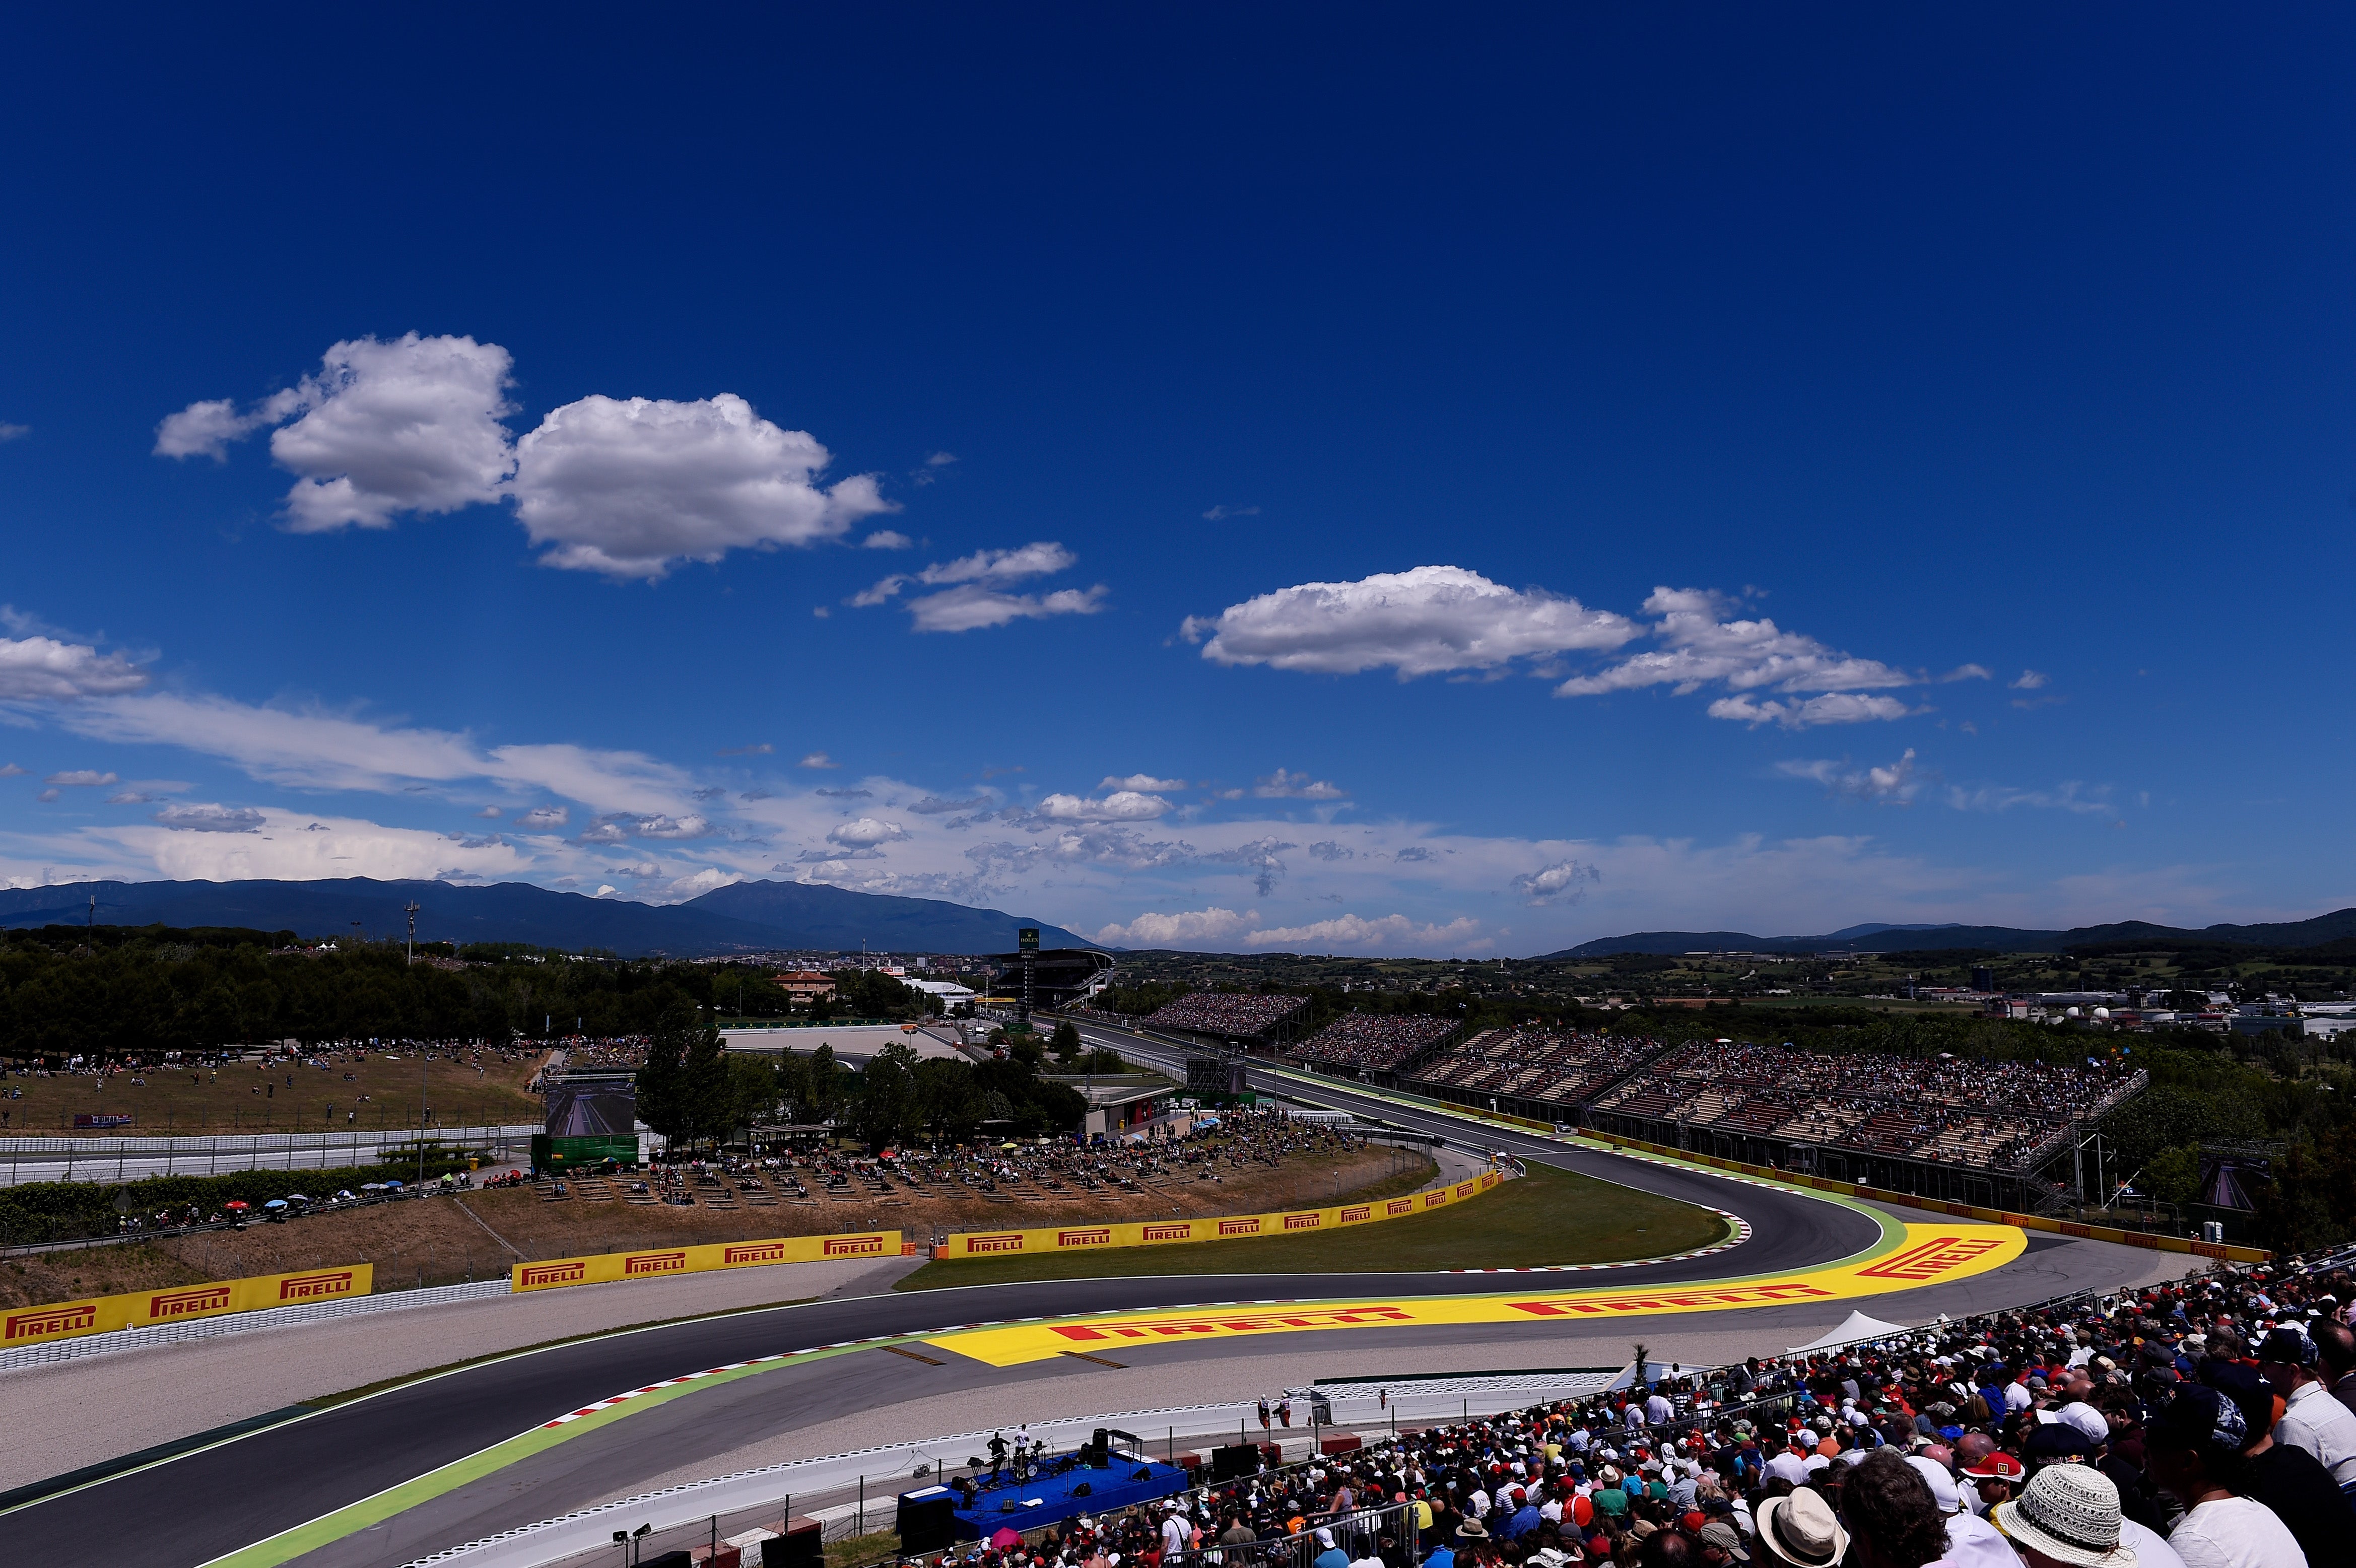 A general view over the Circuit de Catalunya